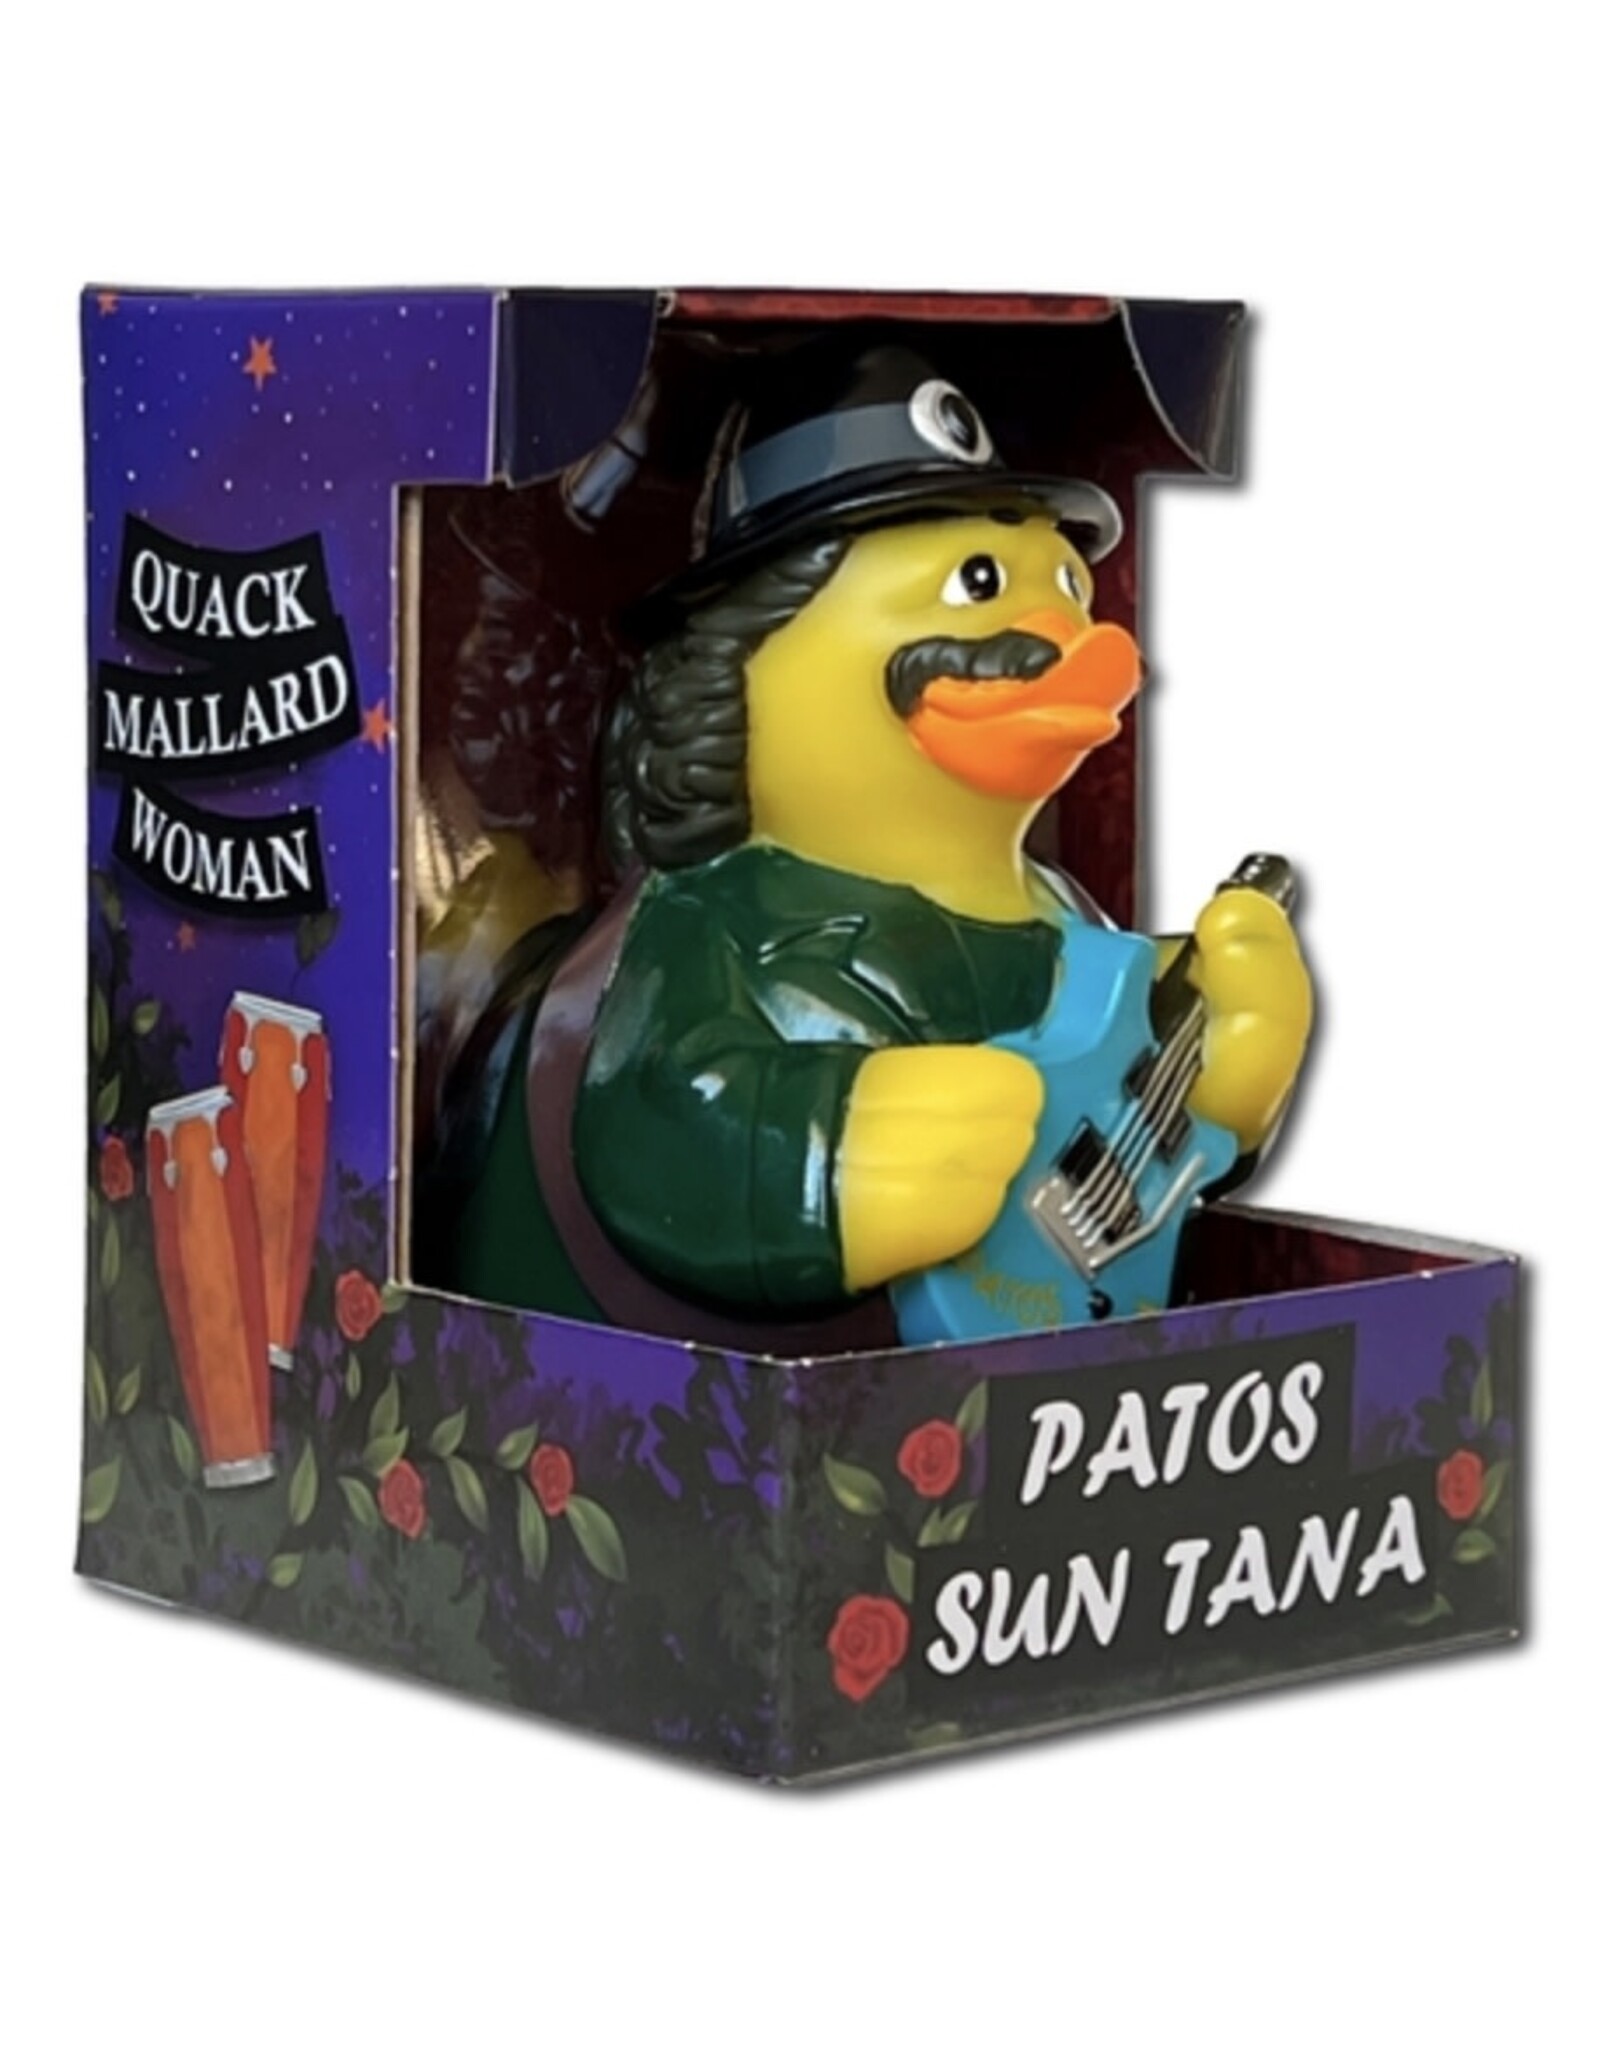 Patos Sun Tana Rubber Duck